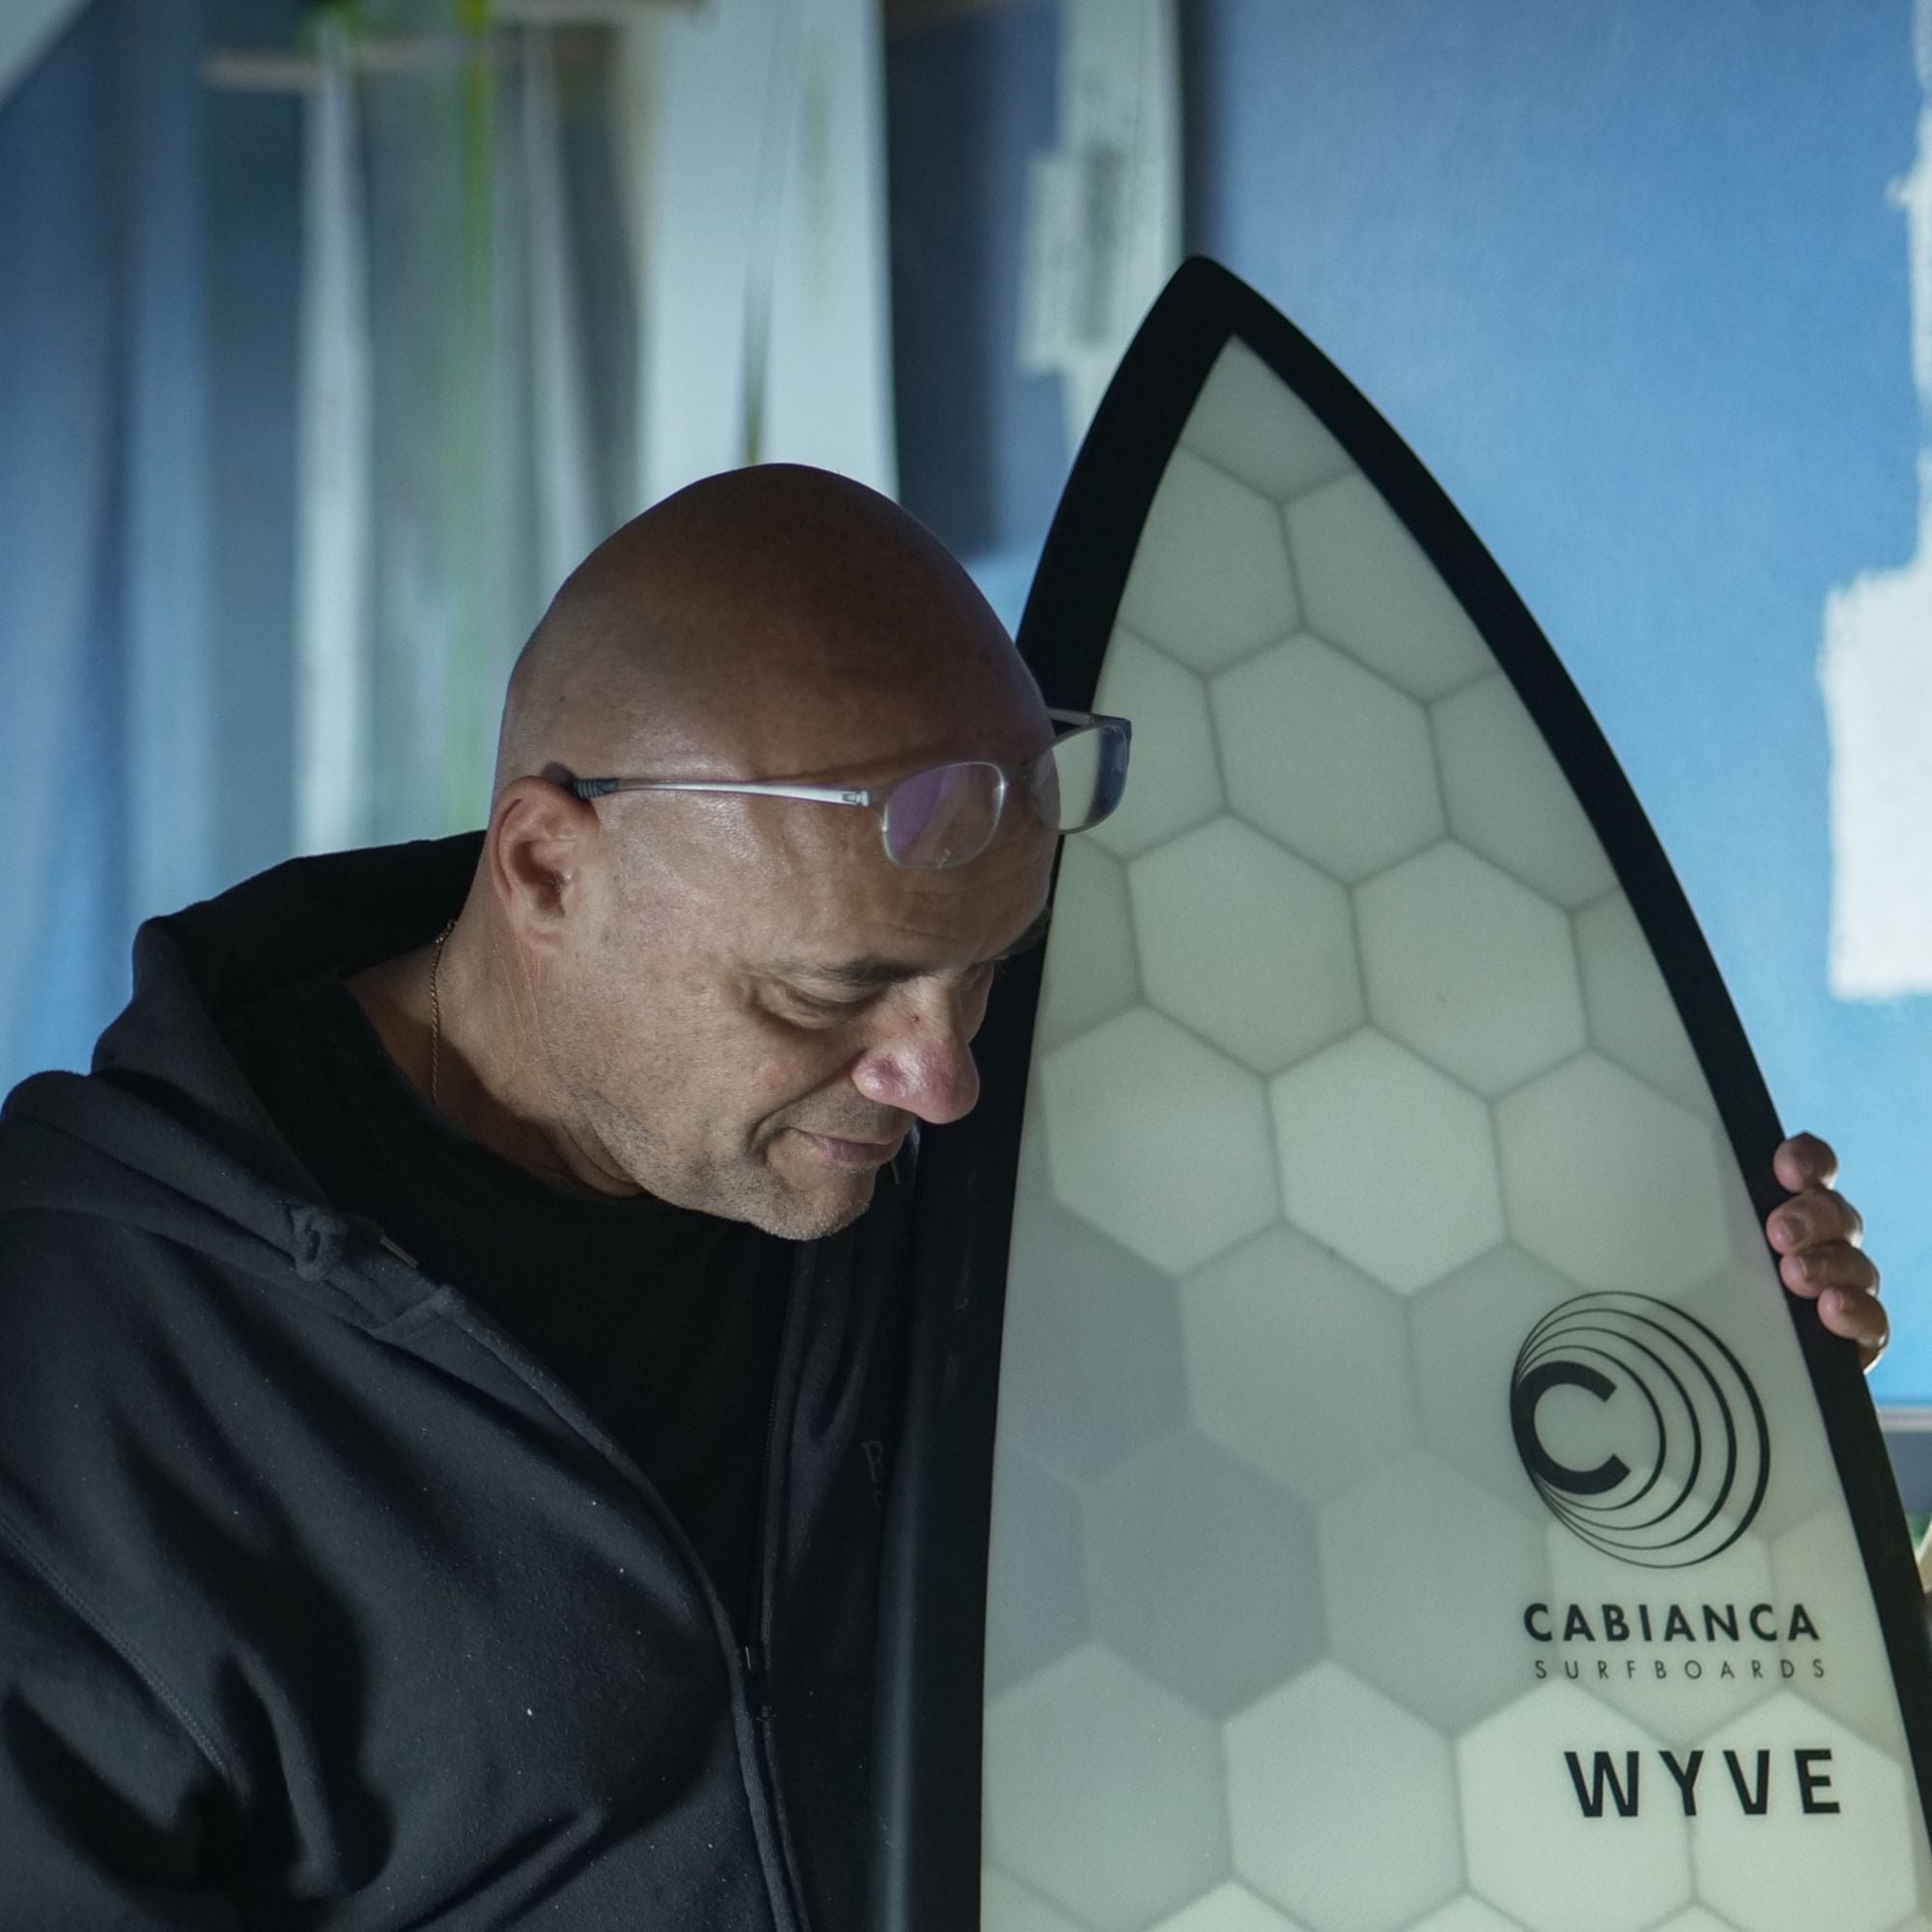 Johnny Cabianca shaper de surf avec une planche de surf Wyve : une marque engagée pour l'environnement.